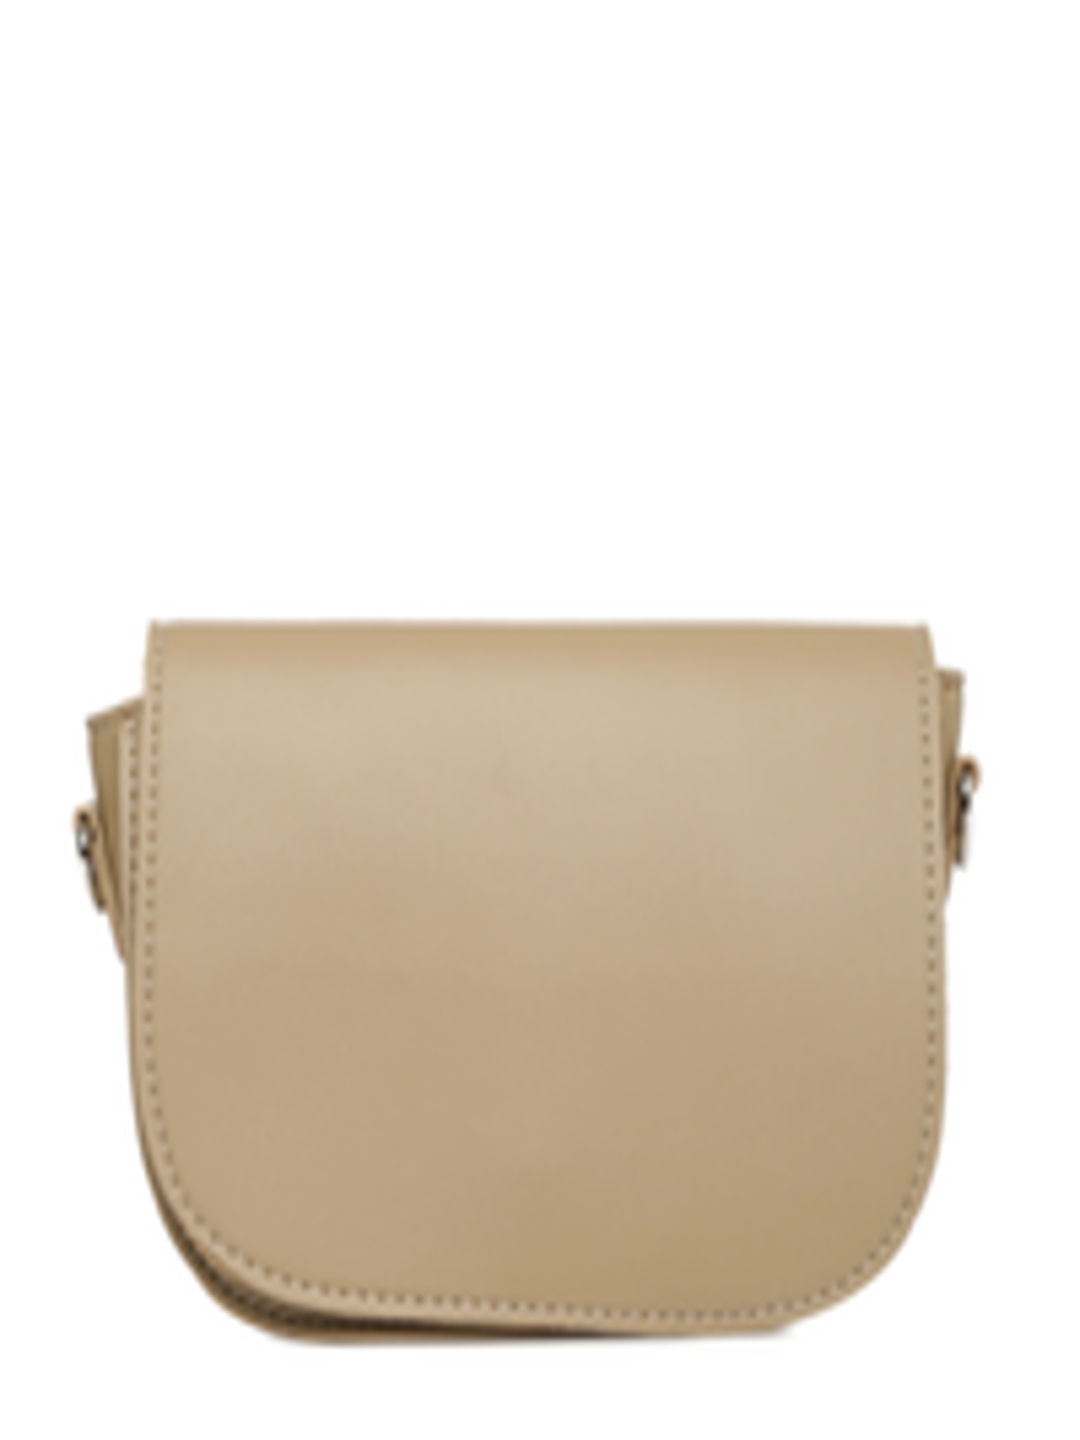 Buy People Brown Solid Sling Bag - Handbags for Women 8825739 | Myntra